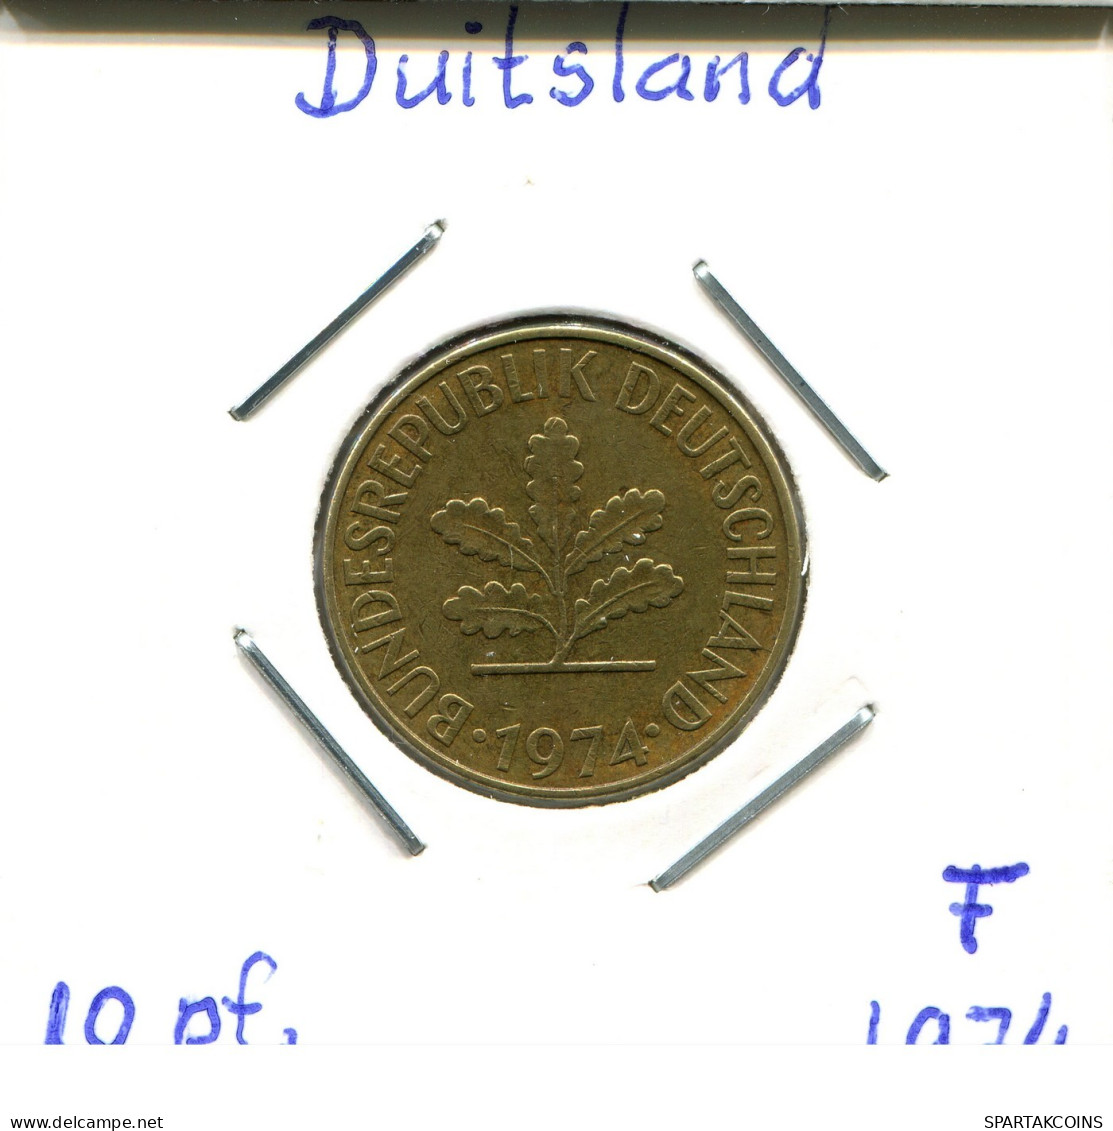 10 PFENNIG 1974 F BRD ALEMANIA Moneda GERMANY #DB408.E.A - 10 Pfennig